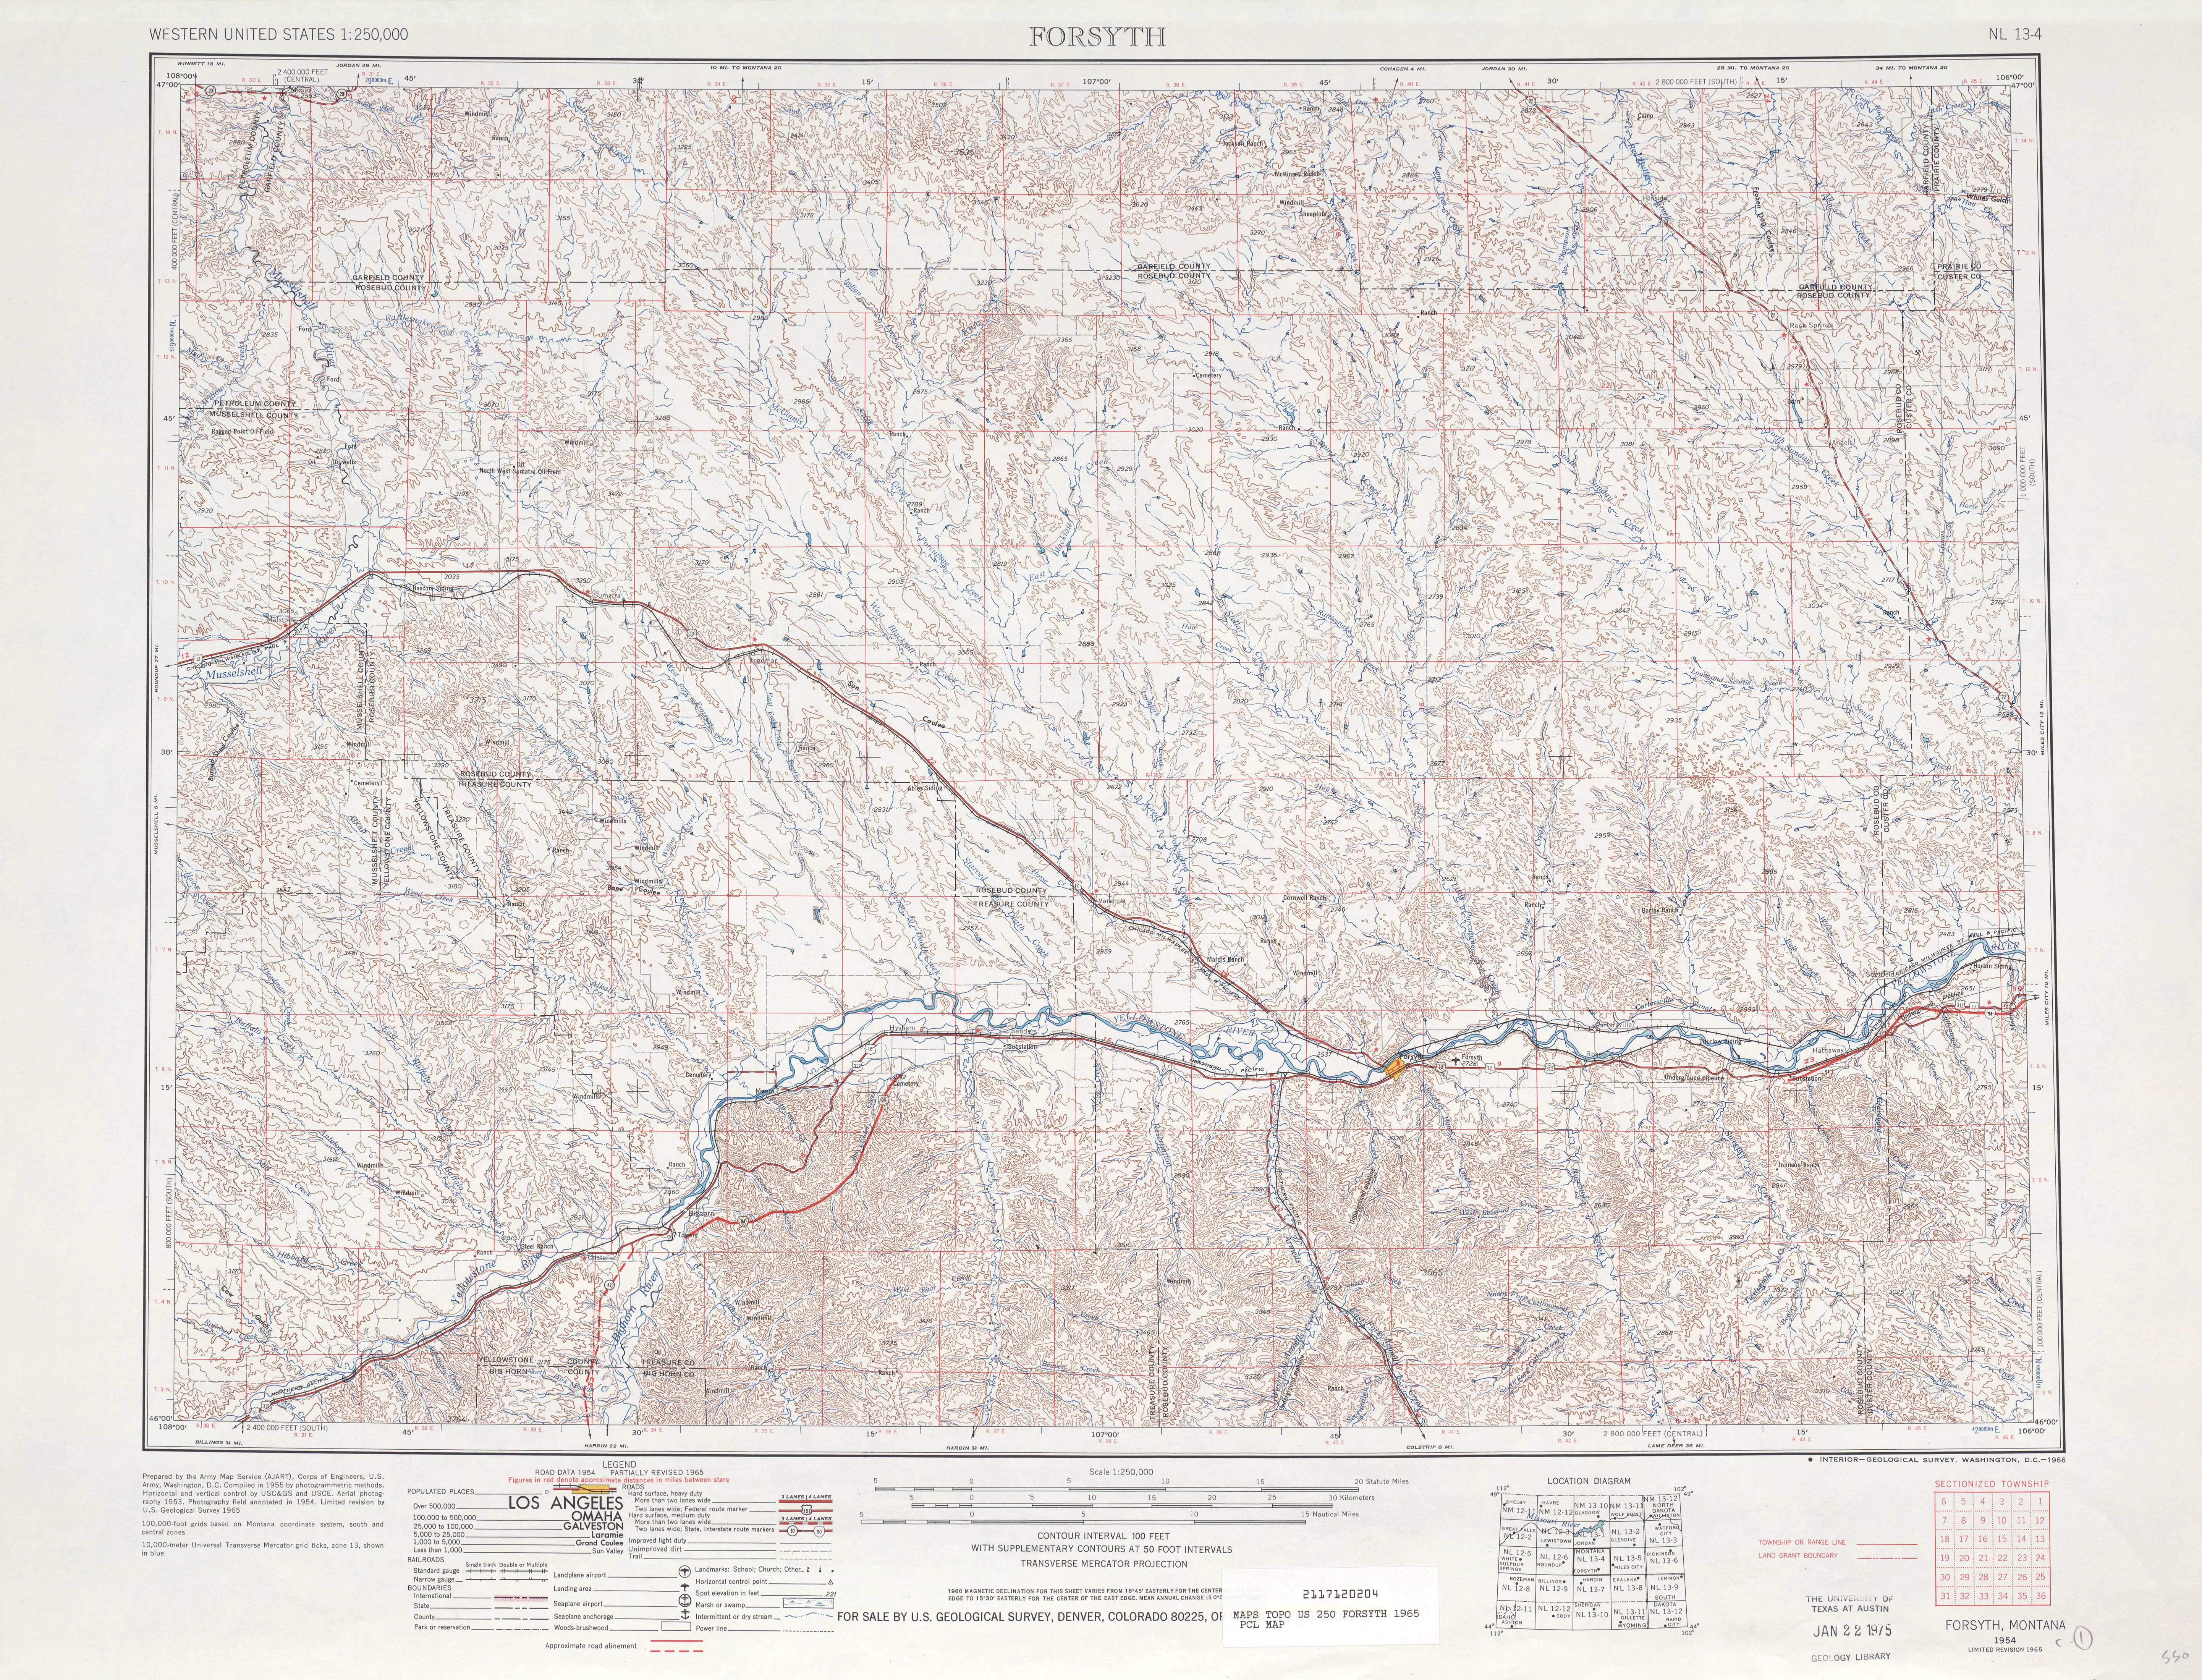 Hoja Forsyth del Mapa Topográfico de los Estados Unidos 1965